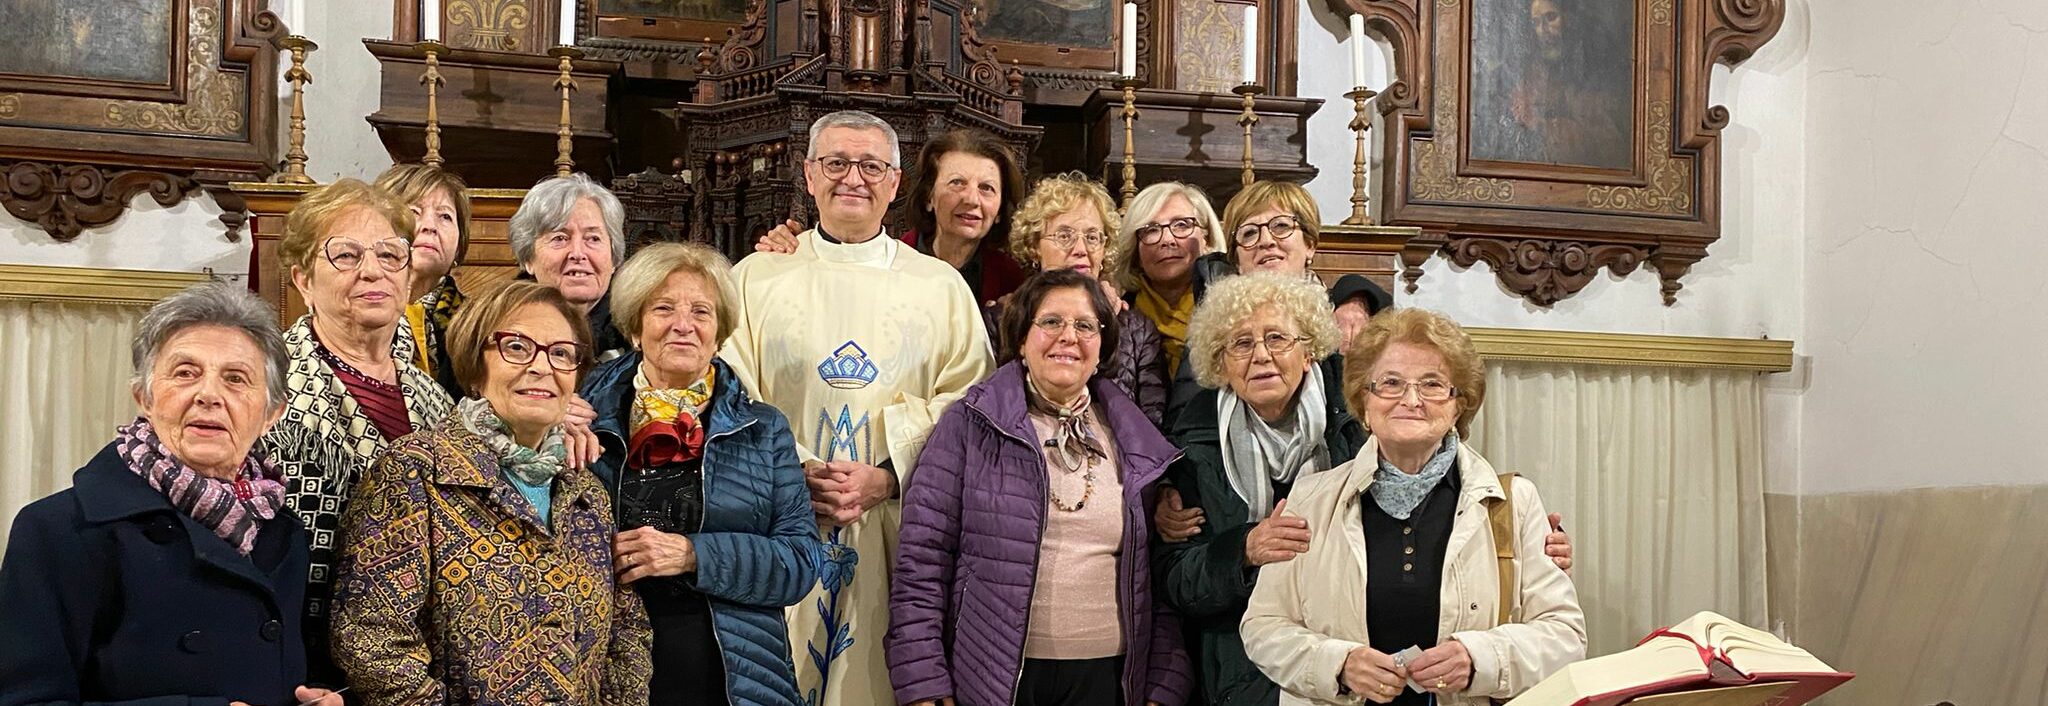 Festa della Madonna della Medaglia Miracolosa con i volontari Vincenziani di Avola. Don Sultana: “non abbiate paura!”